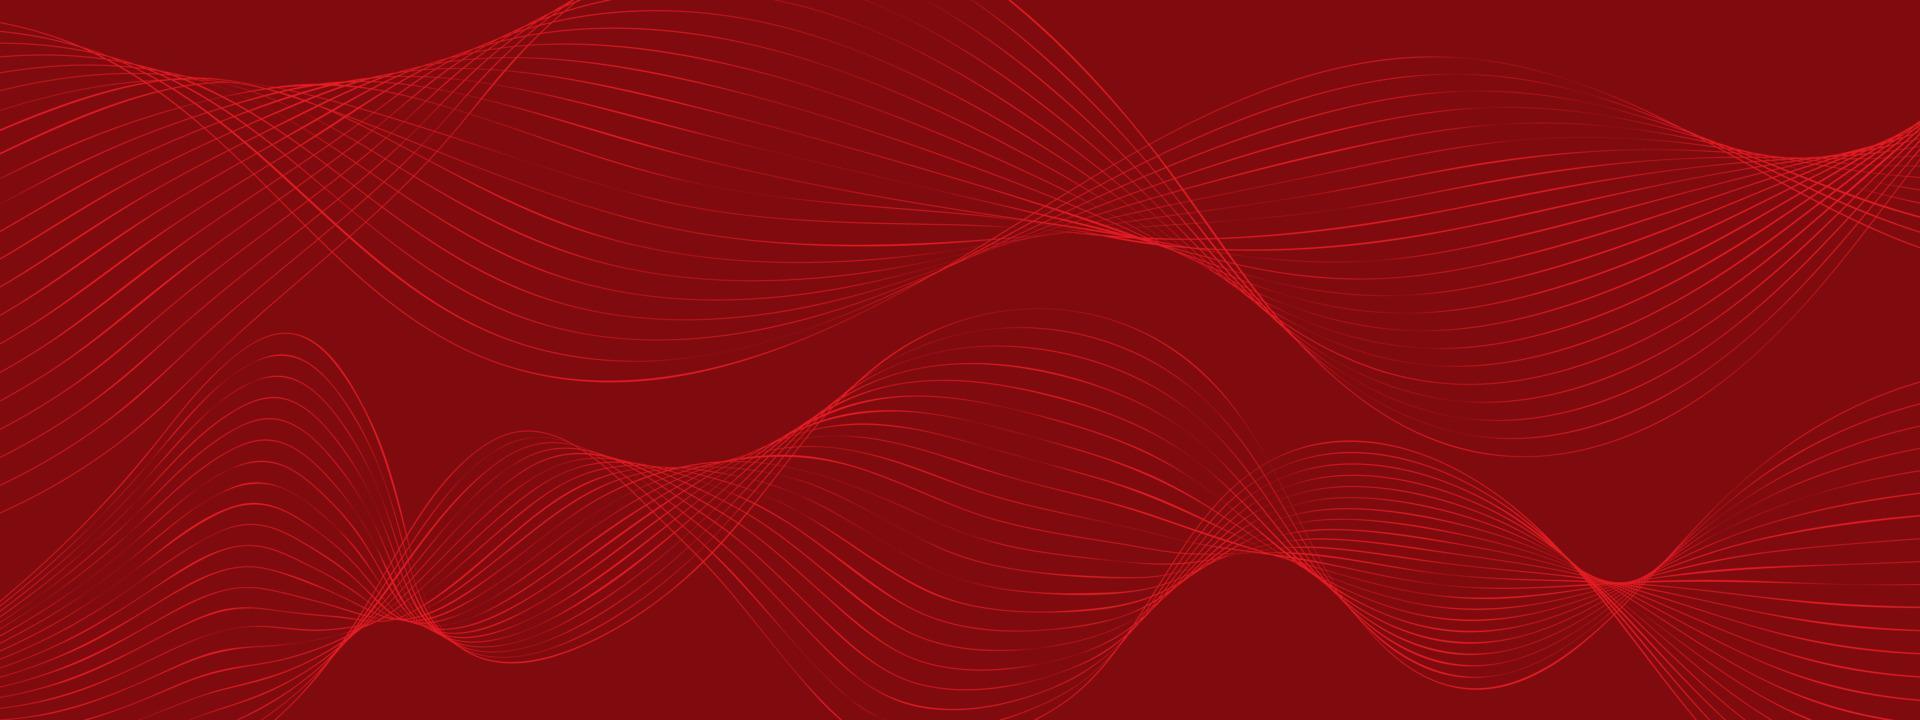 fondo rojo dinámico mínimo, fondo de ondas digitales creativas abstractas, vector de concepto de página de inicio moderno. ondas suaves abstractas y brillantes para folleto, sitio web, diseño de volante, banner.